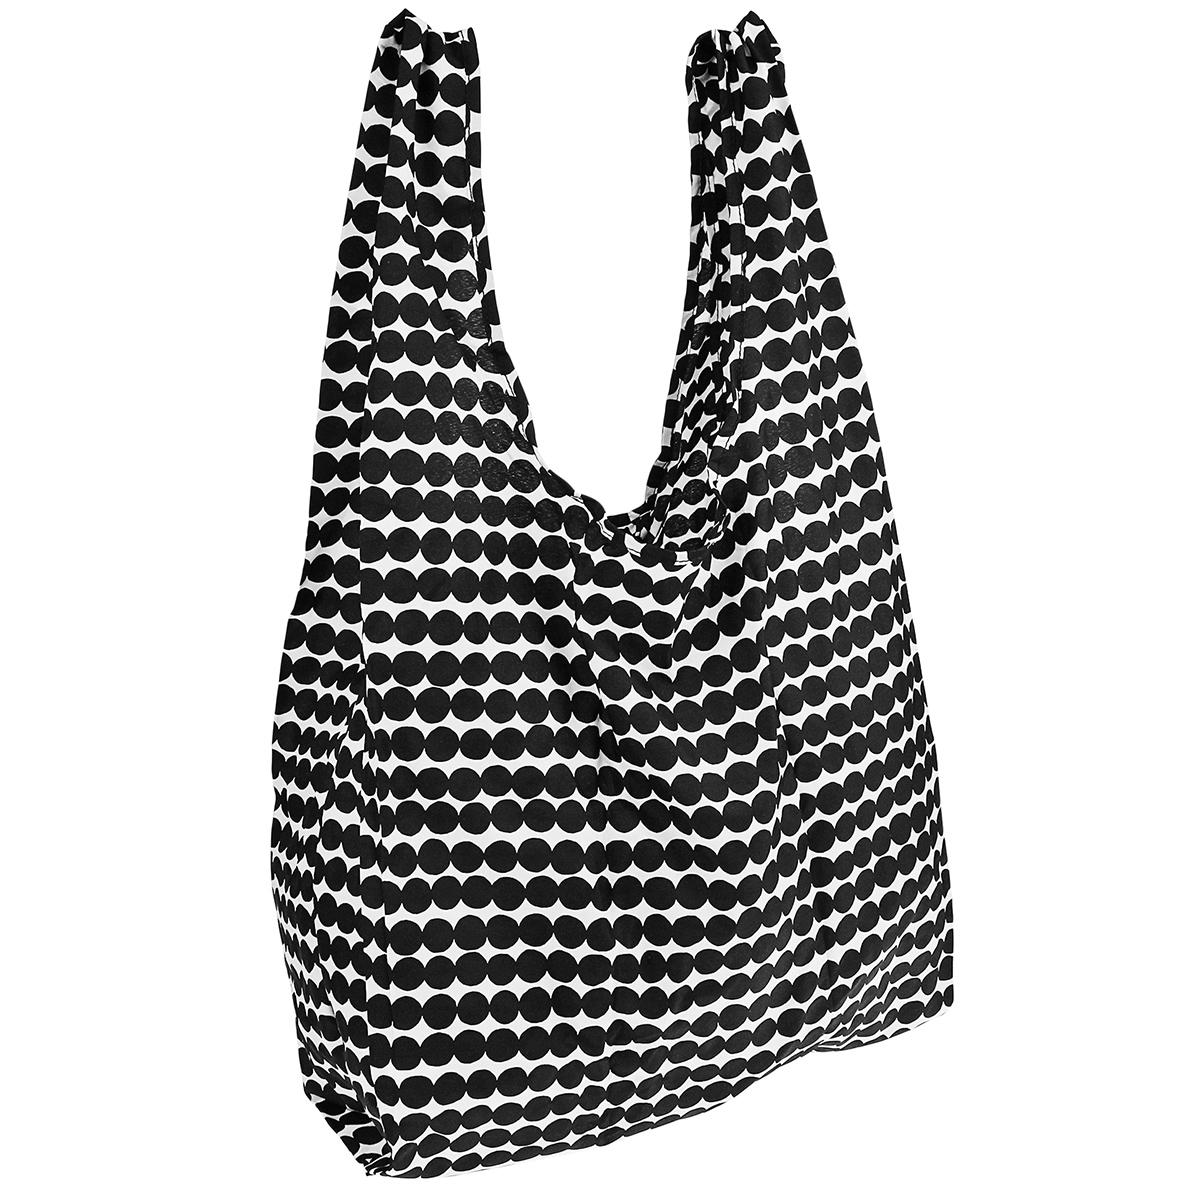 マリメッコ marimekko バッグ トートバッグ エコバッグ ショッピングバッグ 048855 190 スマートバッグ Rasymatto smartbag ブラック系